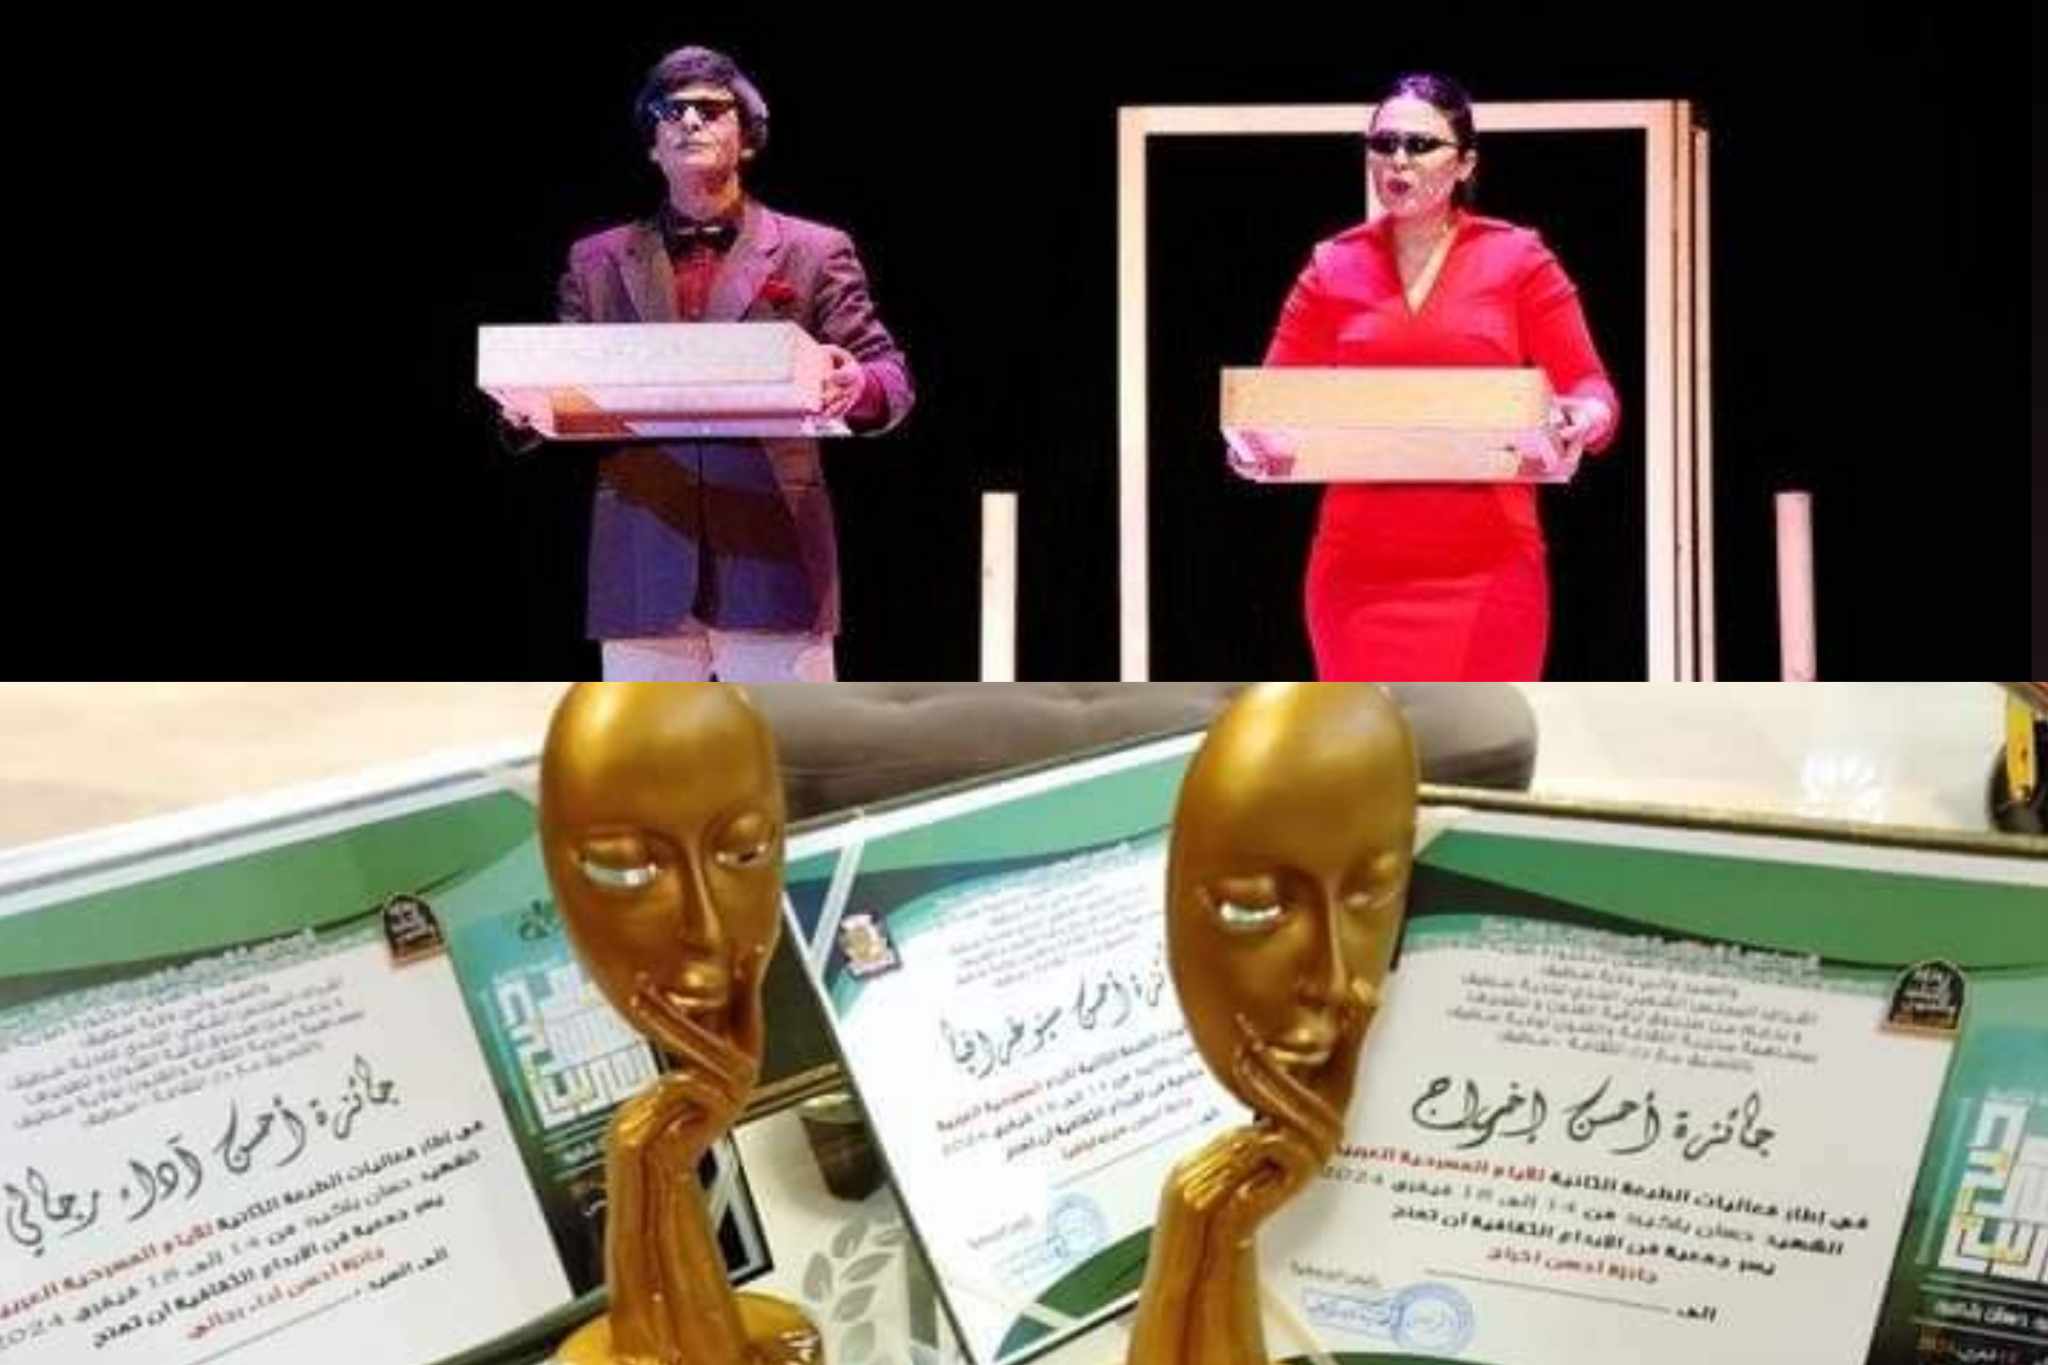 تونسيتان بين الفائزين في "جائزة سليماني للأدب المقاوم".. ومشاركة تحكيمية